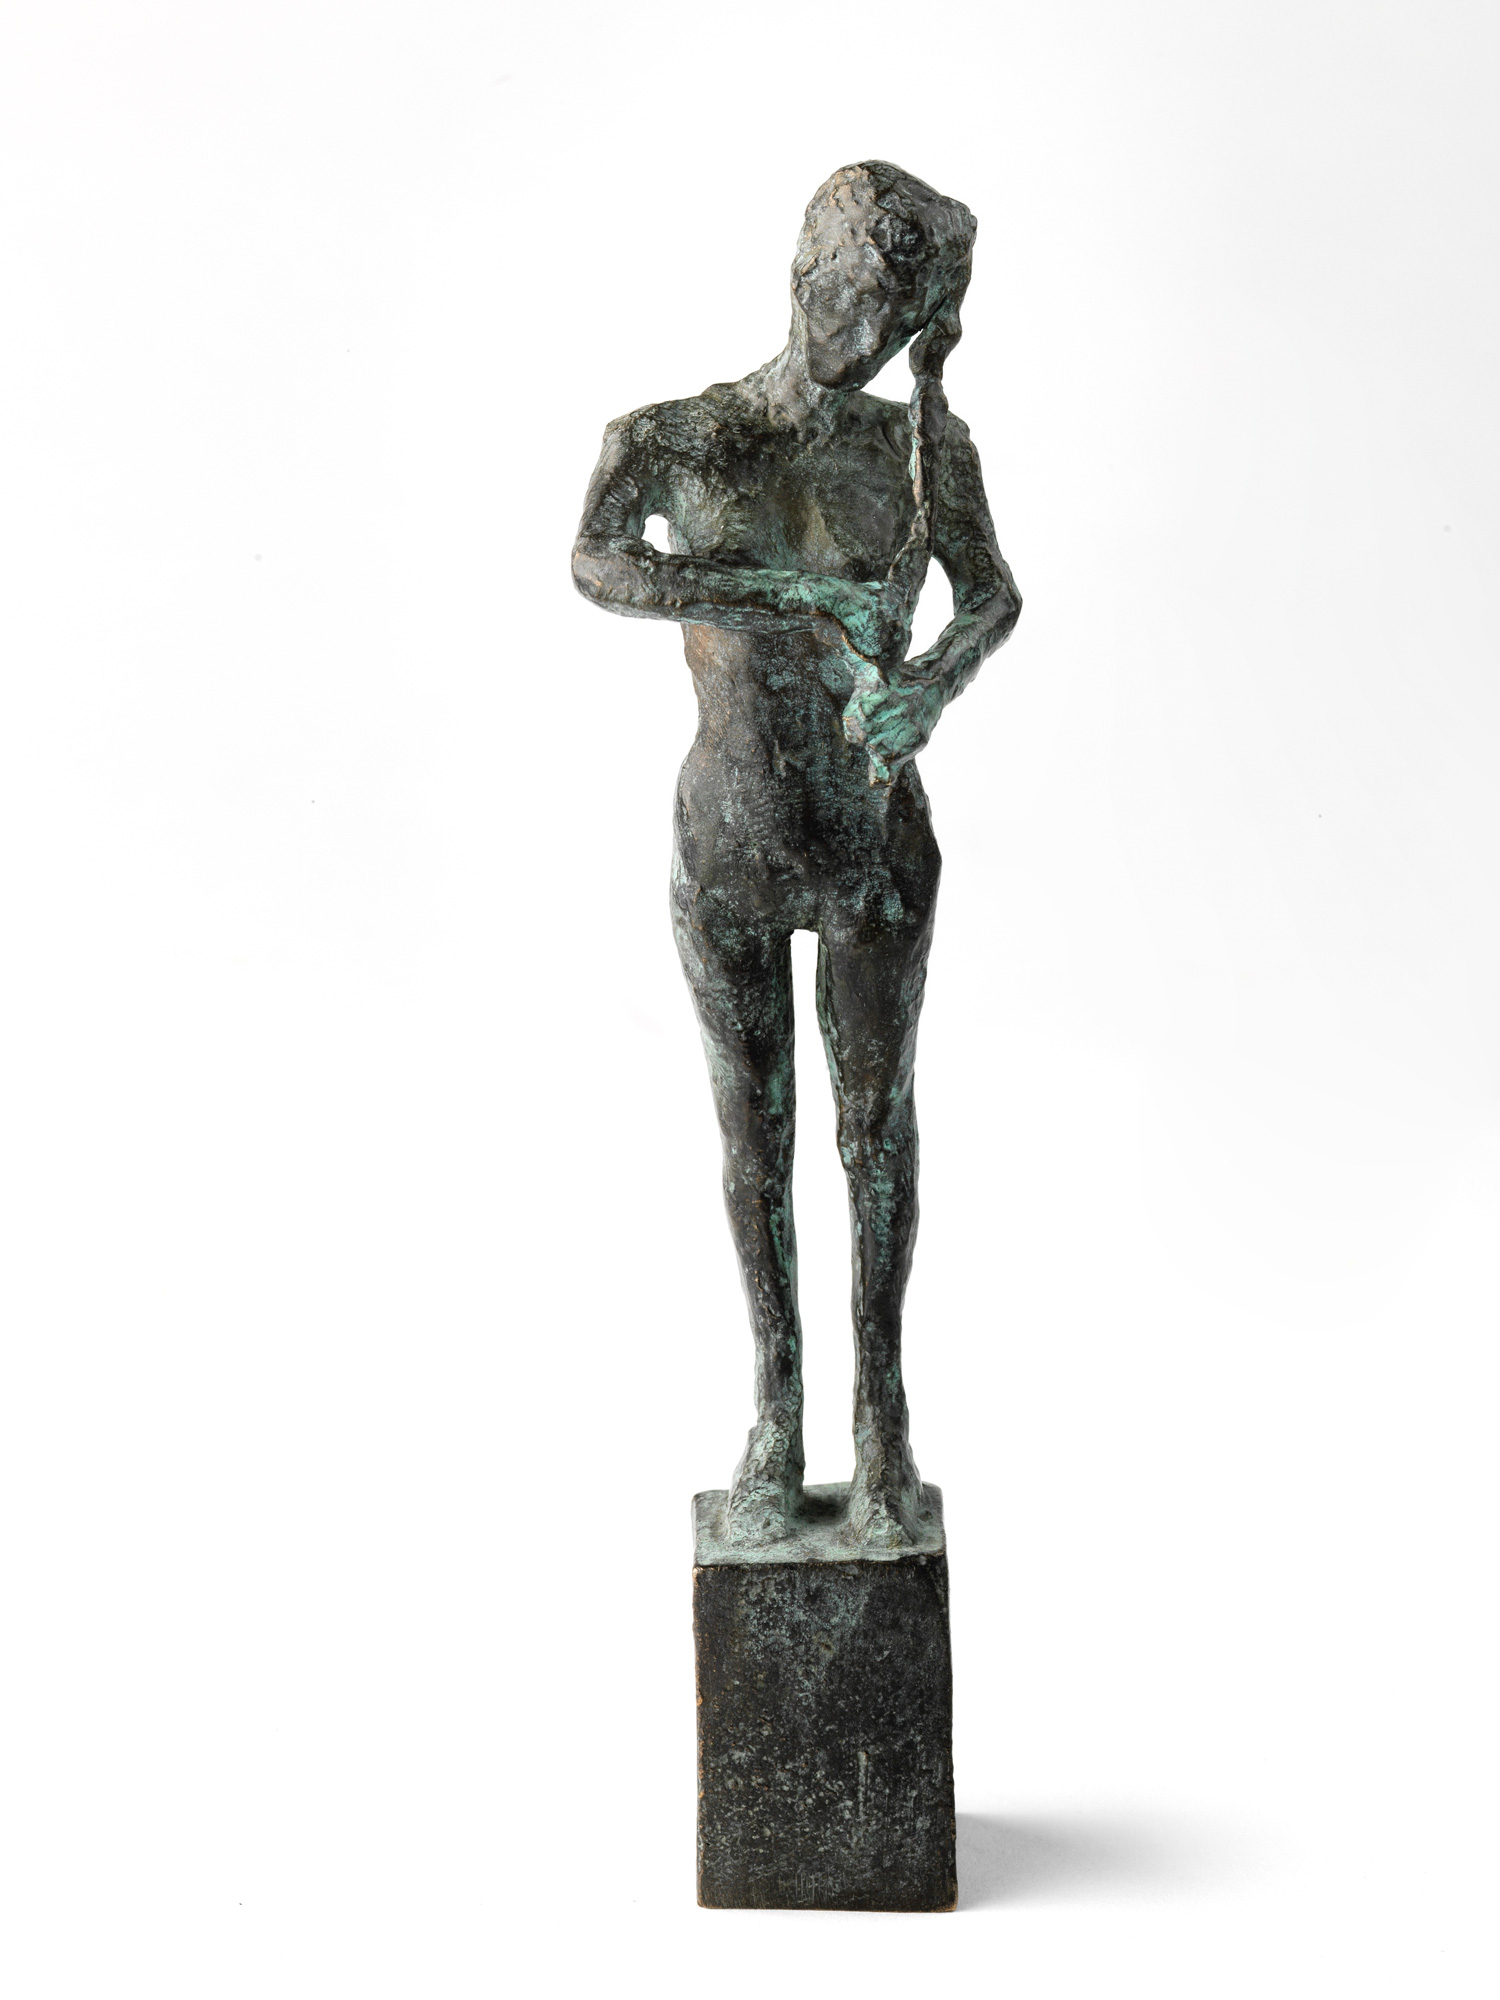 Skulptur "Kleine Kaysa" (2016) von Thomas Jastram